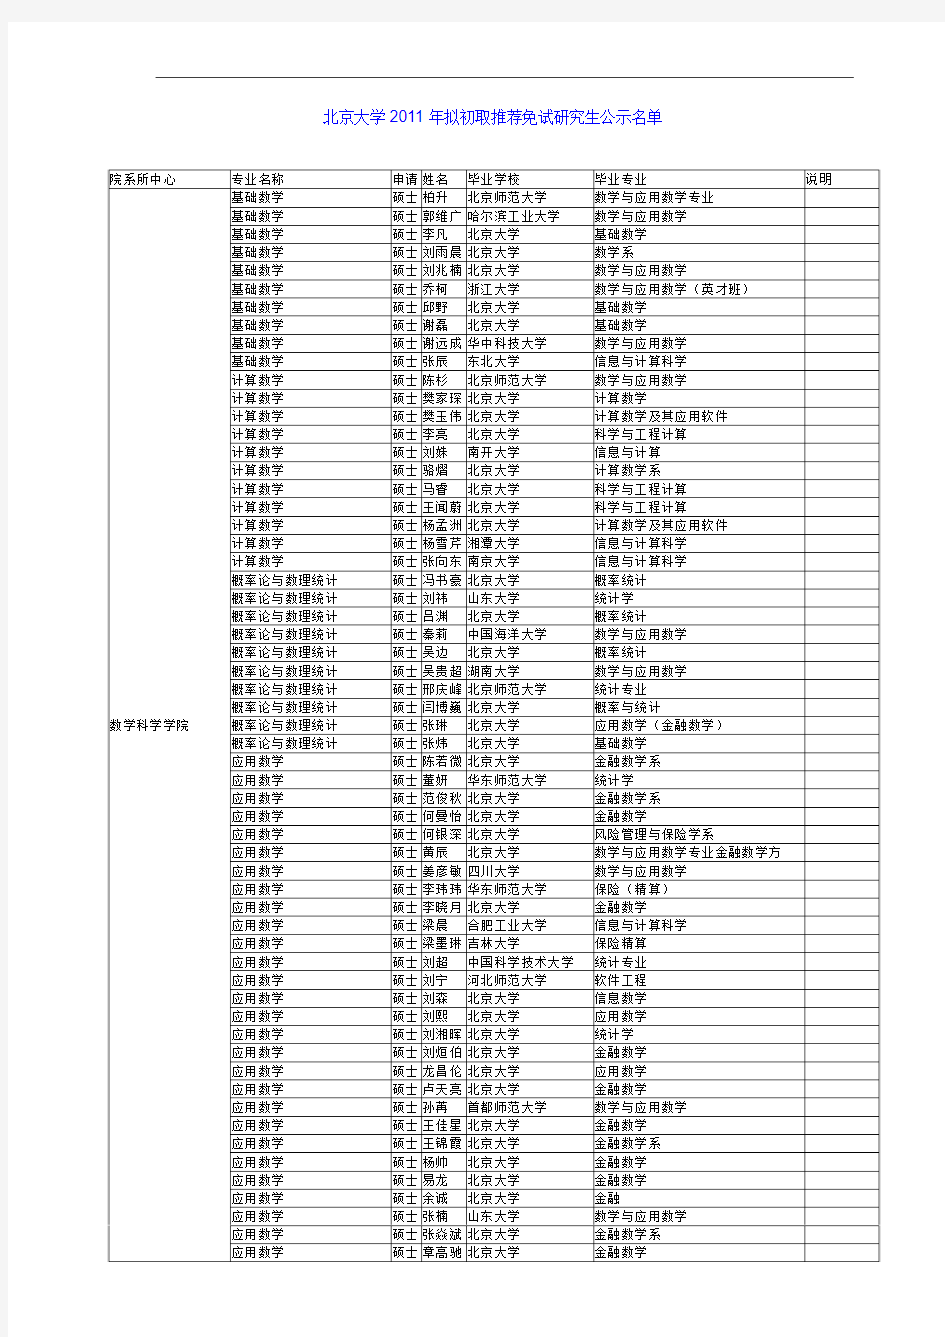 北京大学2011年拟初取推荐免试研究生公示名单